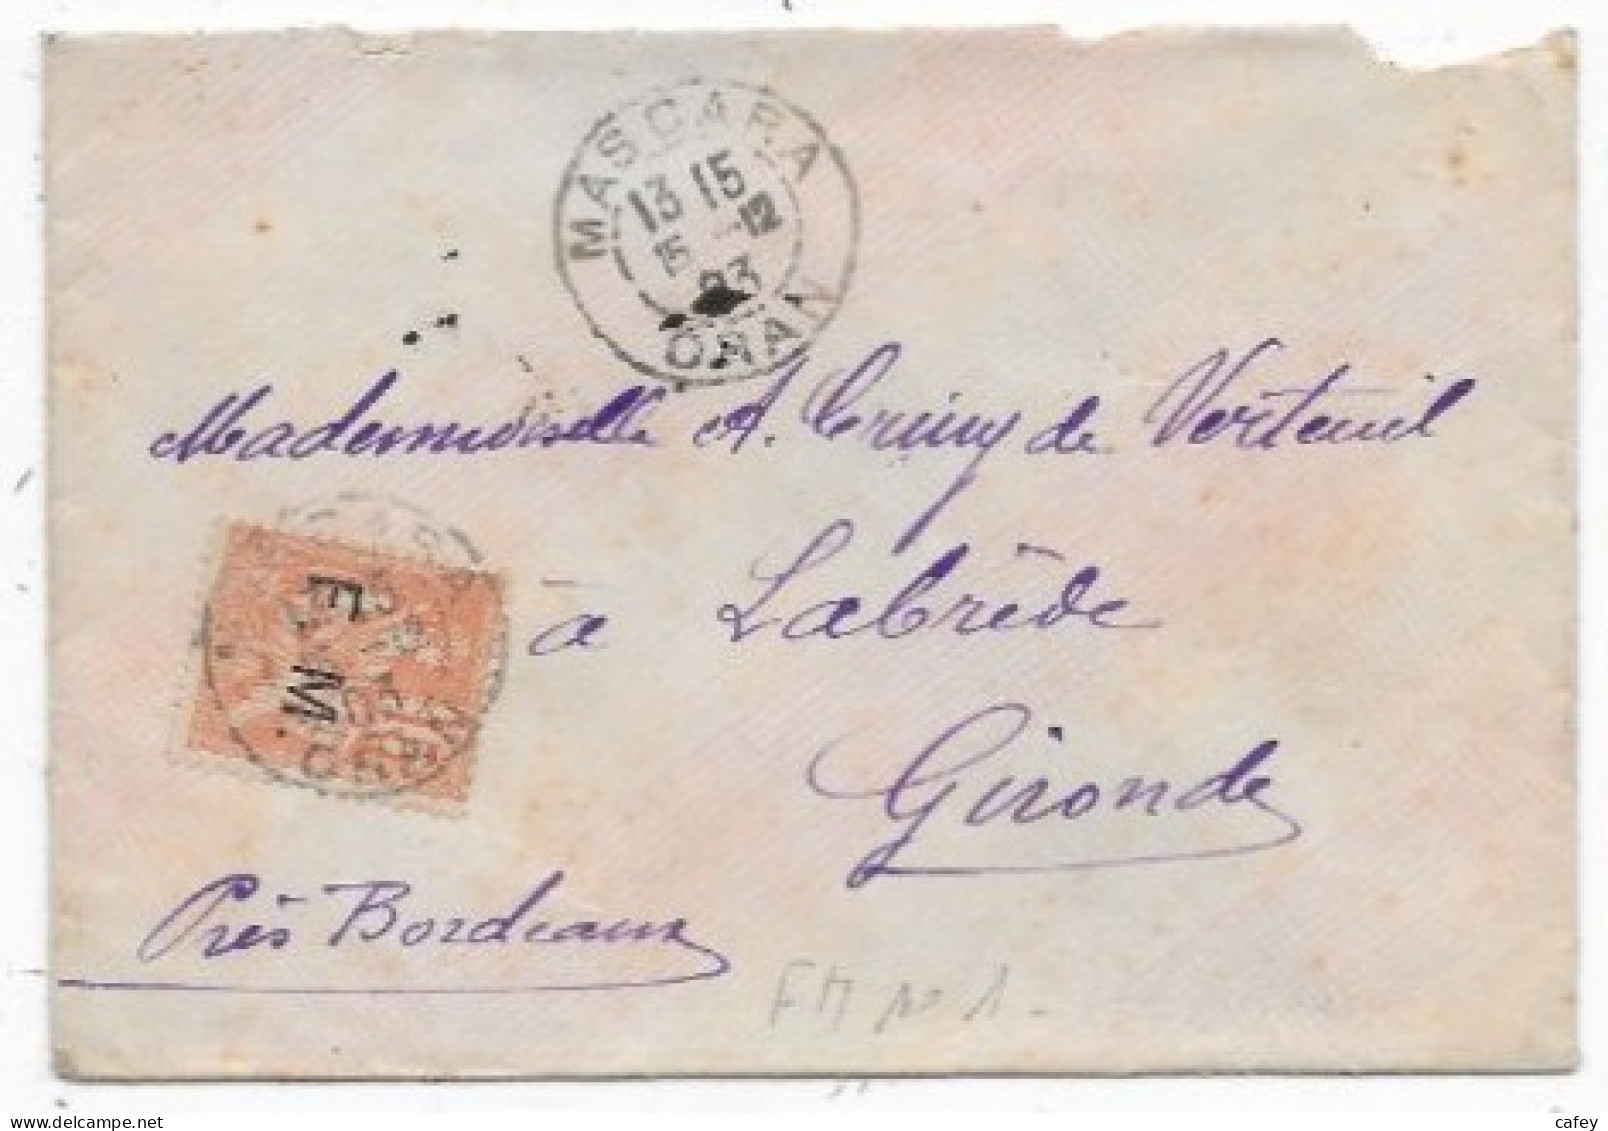 ALGERIE Lettre Timbre FM MOUCHON Càd MASCARA 1903 - Military Postage Stamps